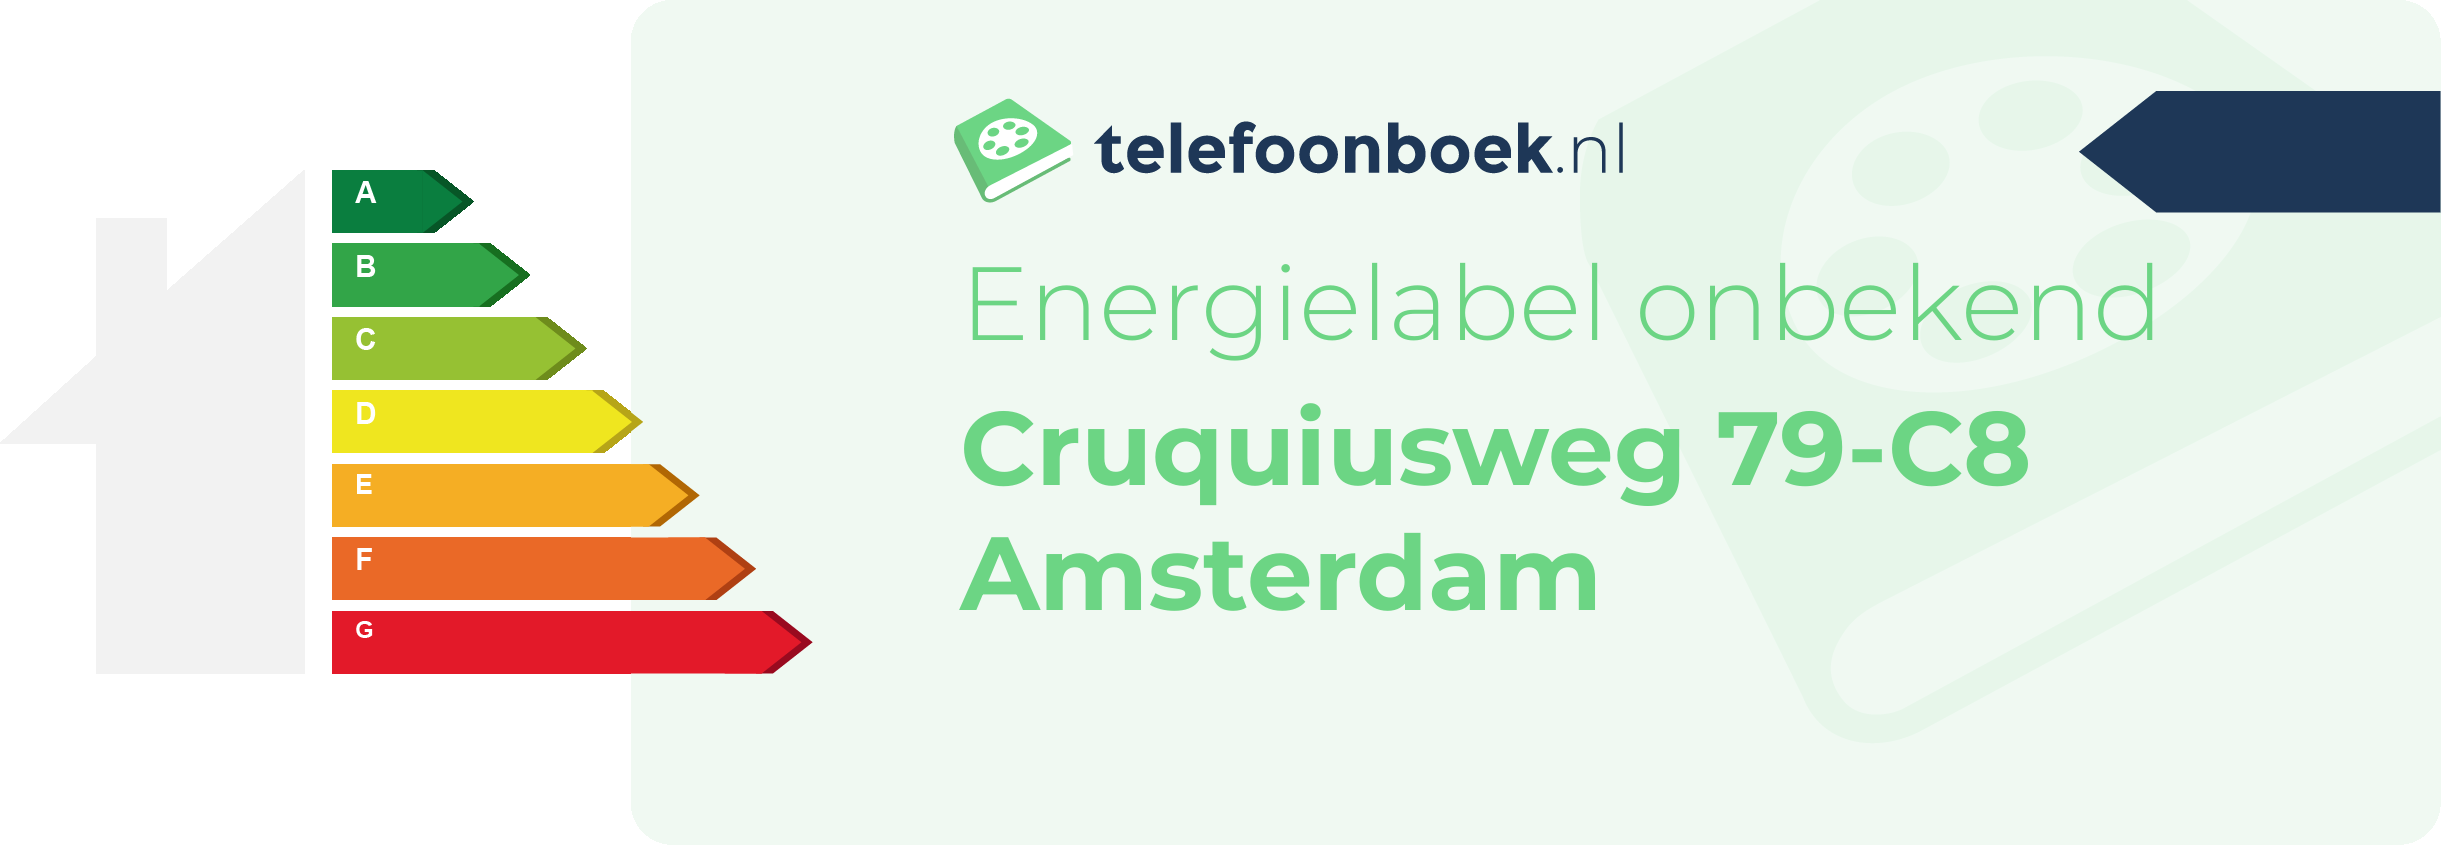 Energielabel Cruquiusweg 79-C8 Amsterdam